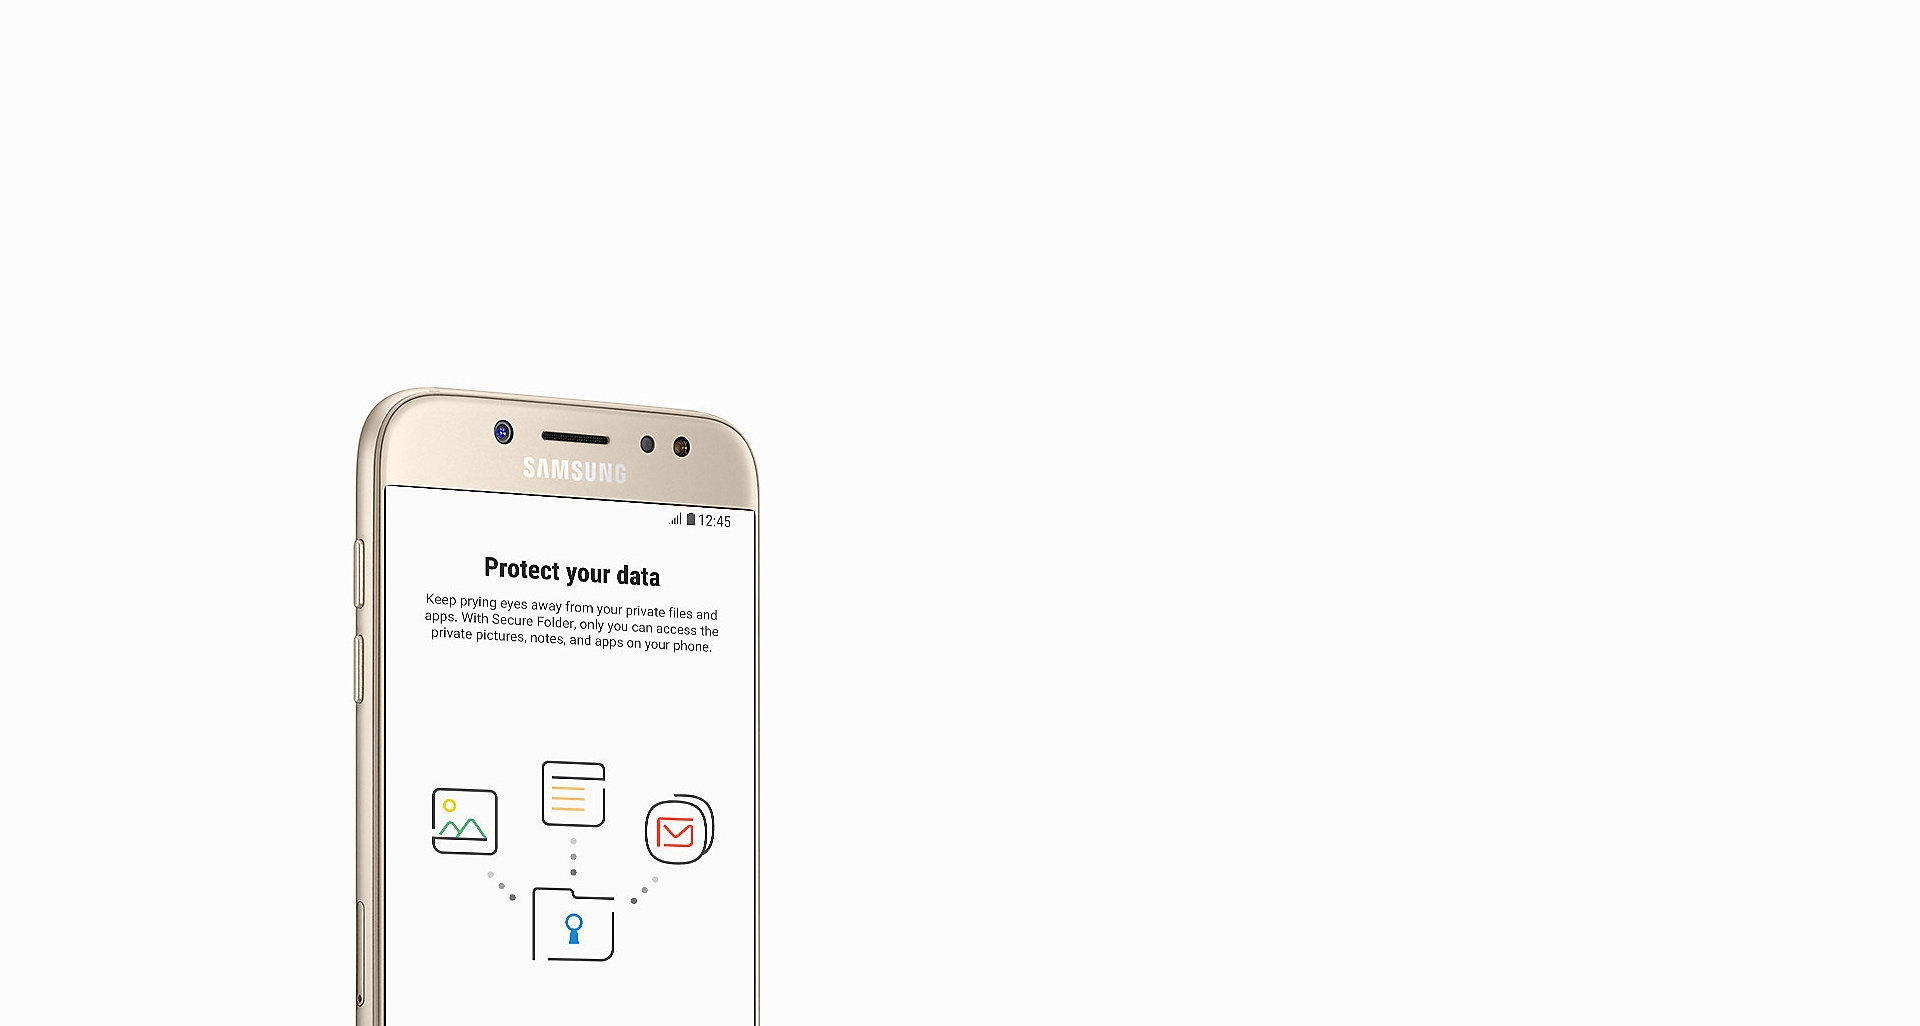 گوشی گلکسی جی 5 پرو با امنیتی فوق العاده برای محافظت از اطلاعات شما